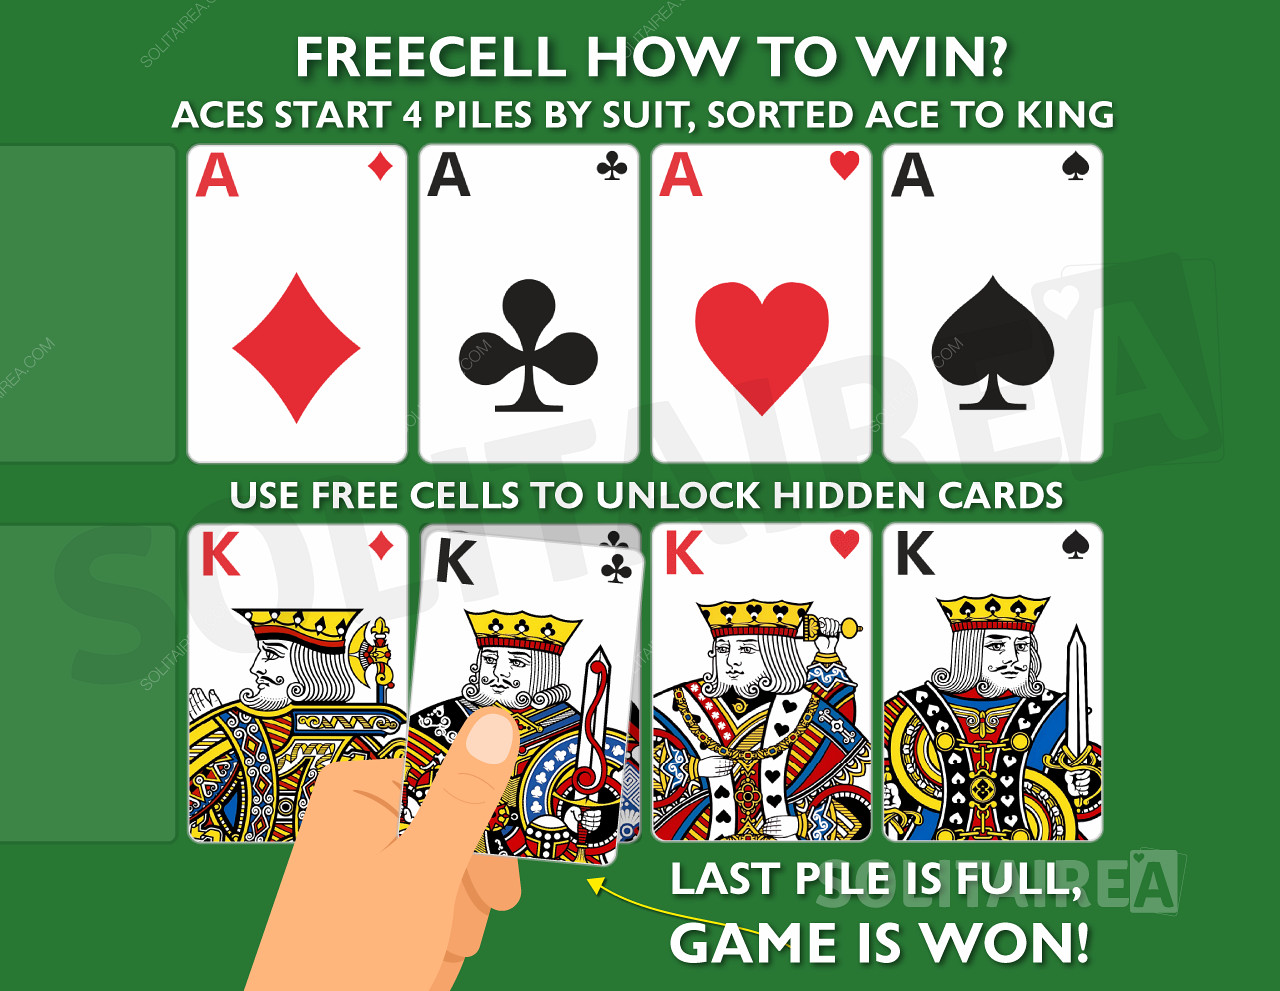 Hvordan vinner du spillet? Fullfør de fire bunkene med kort i samme farge, sortert fra ess til konger.